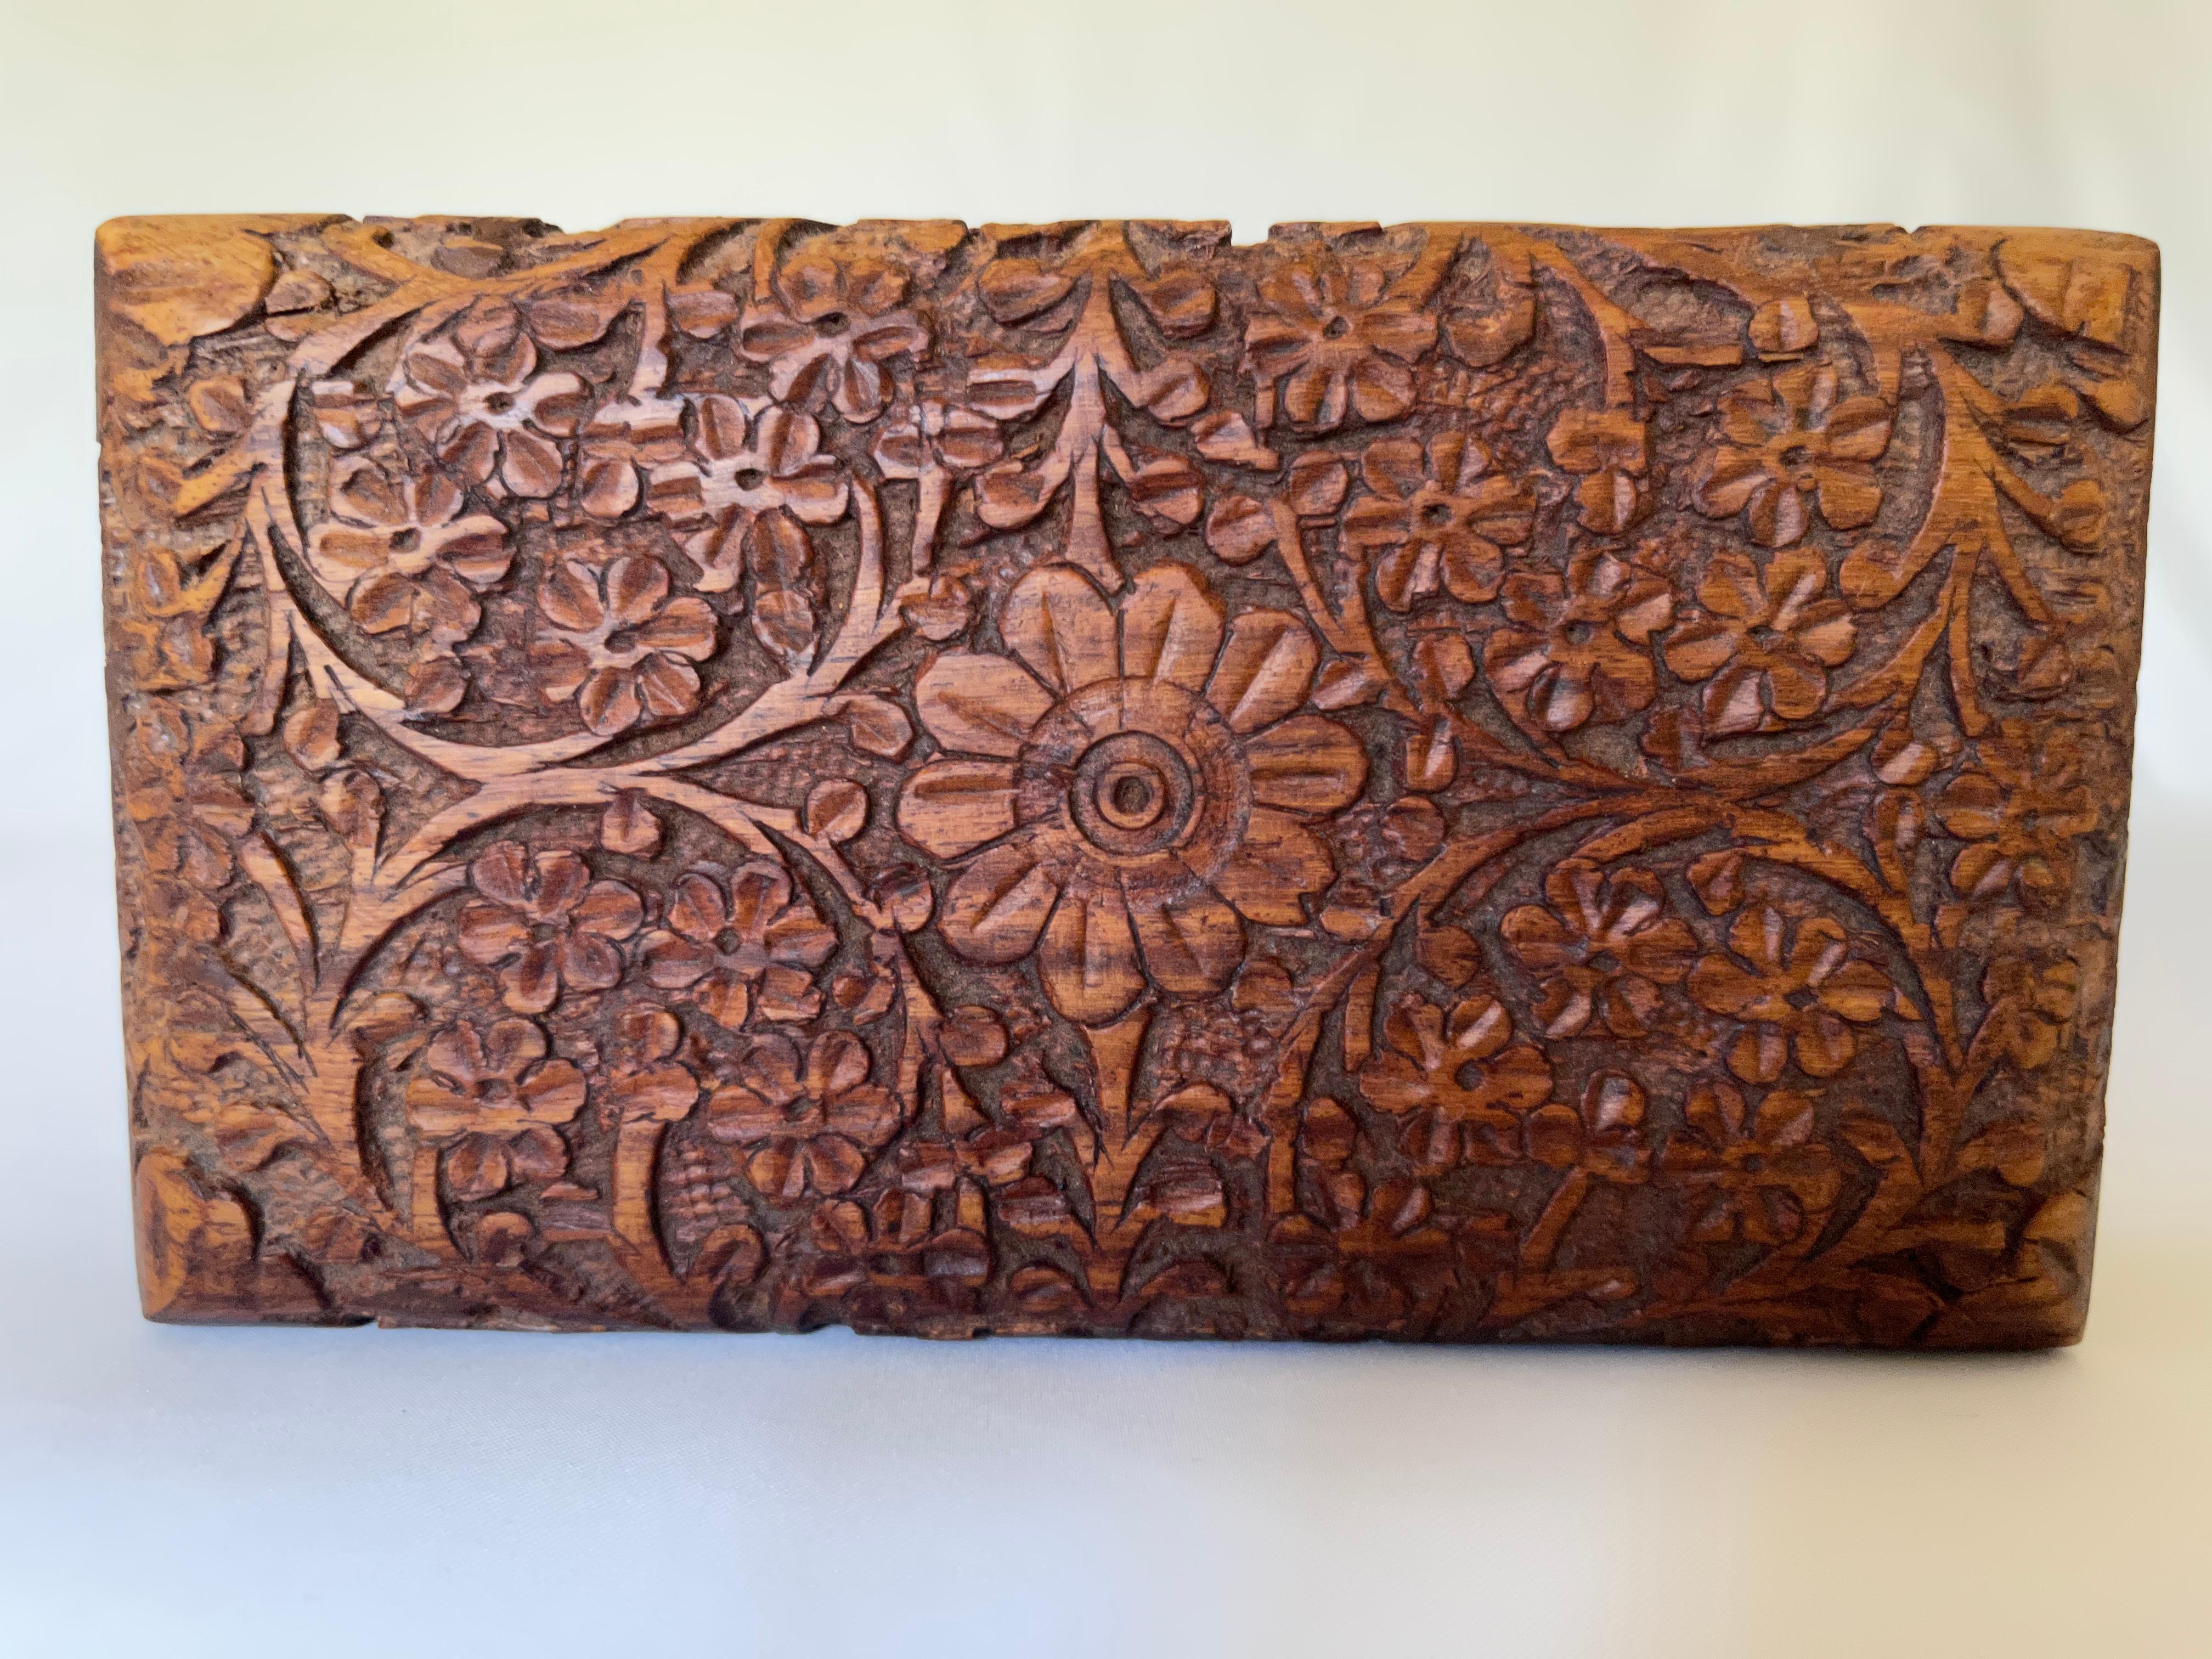 Boîte à bijoux indienne en bois de teck massif à motif floral moghol, sculptée à la main de manière complexe, avec dessus à charnière, vers les années 1960. Sculpture ornée sur le dessus et les quatre côtés autour.